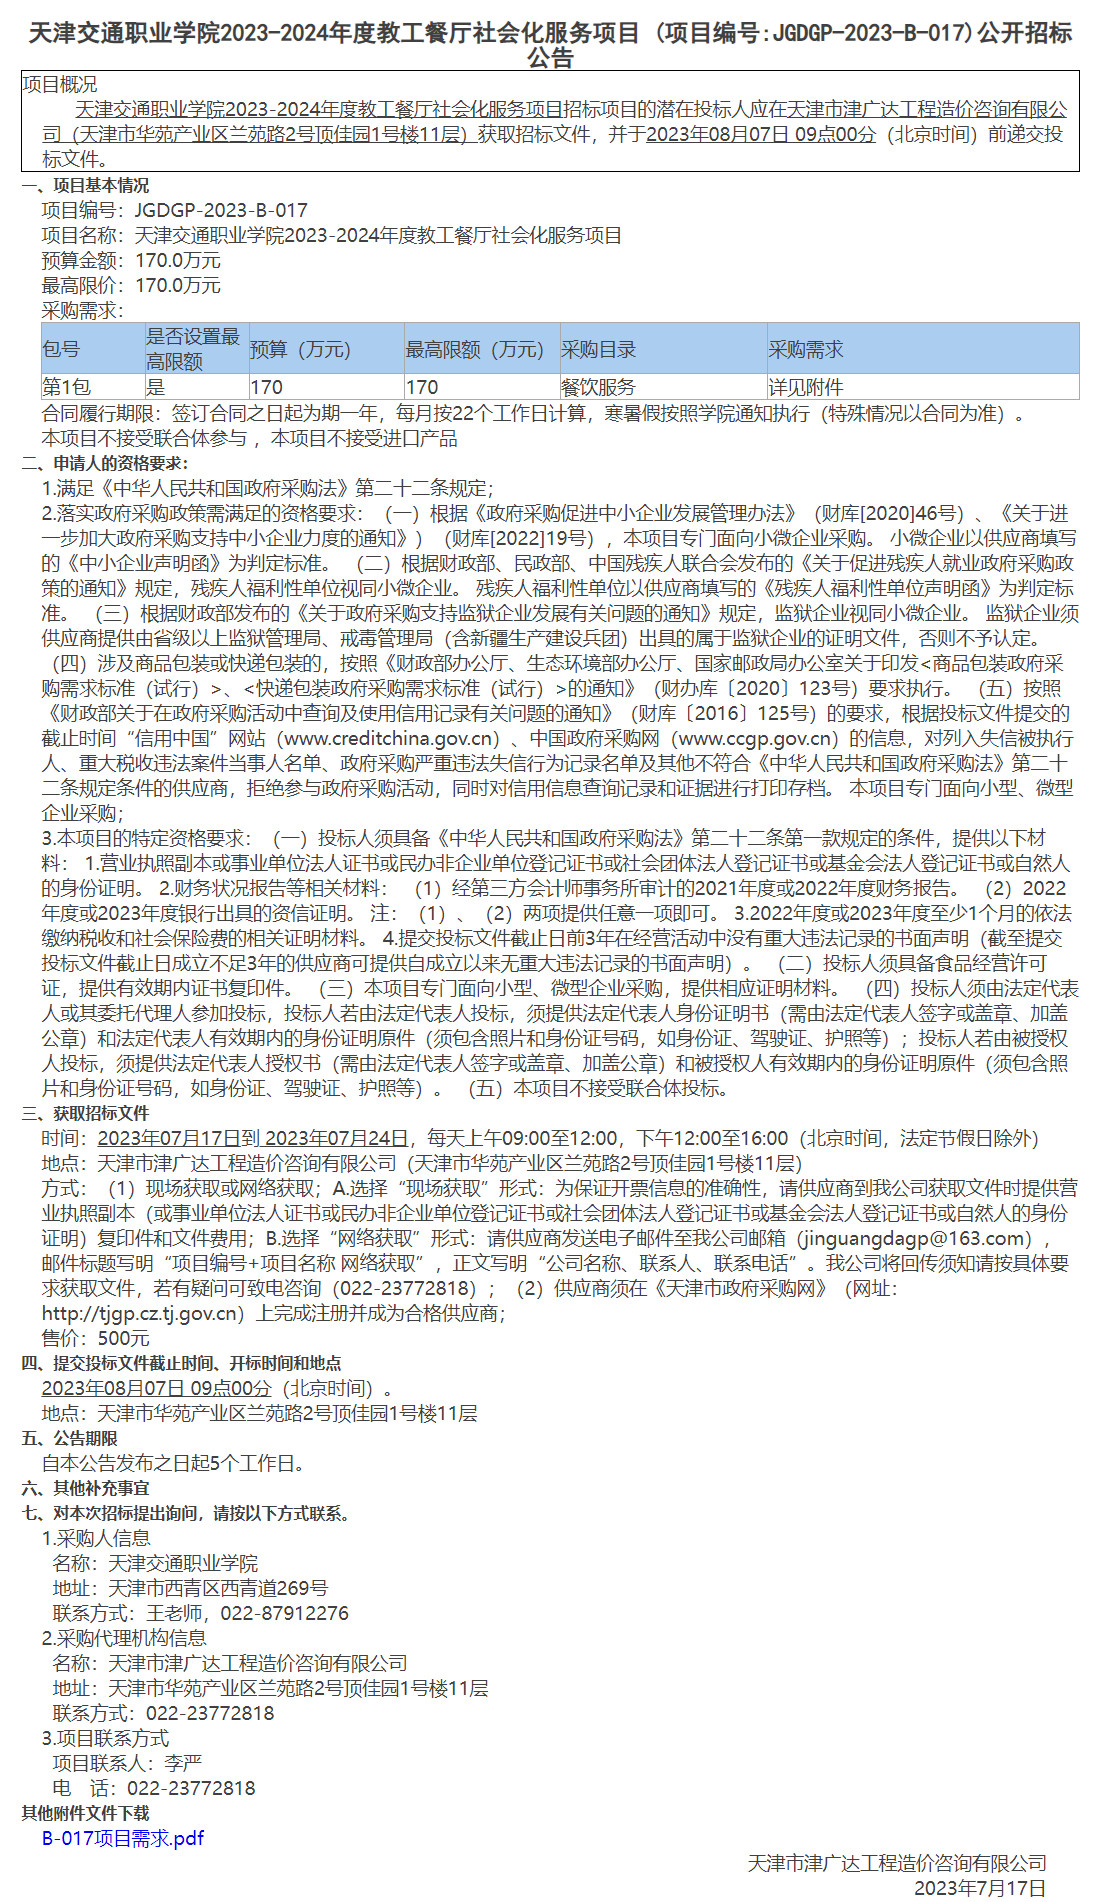 天津交通职业学院2023-2024年度教工餐厅社会化服务项目(图1)